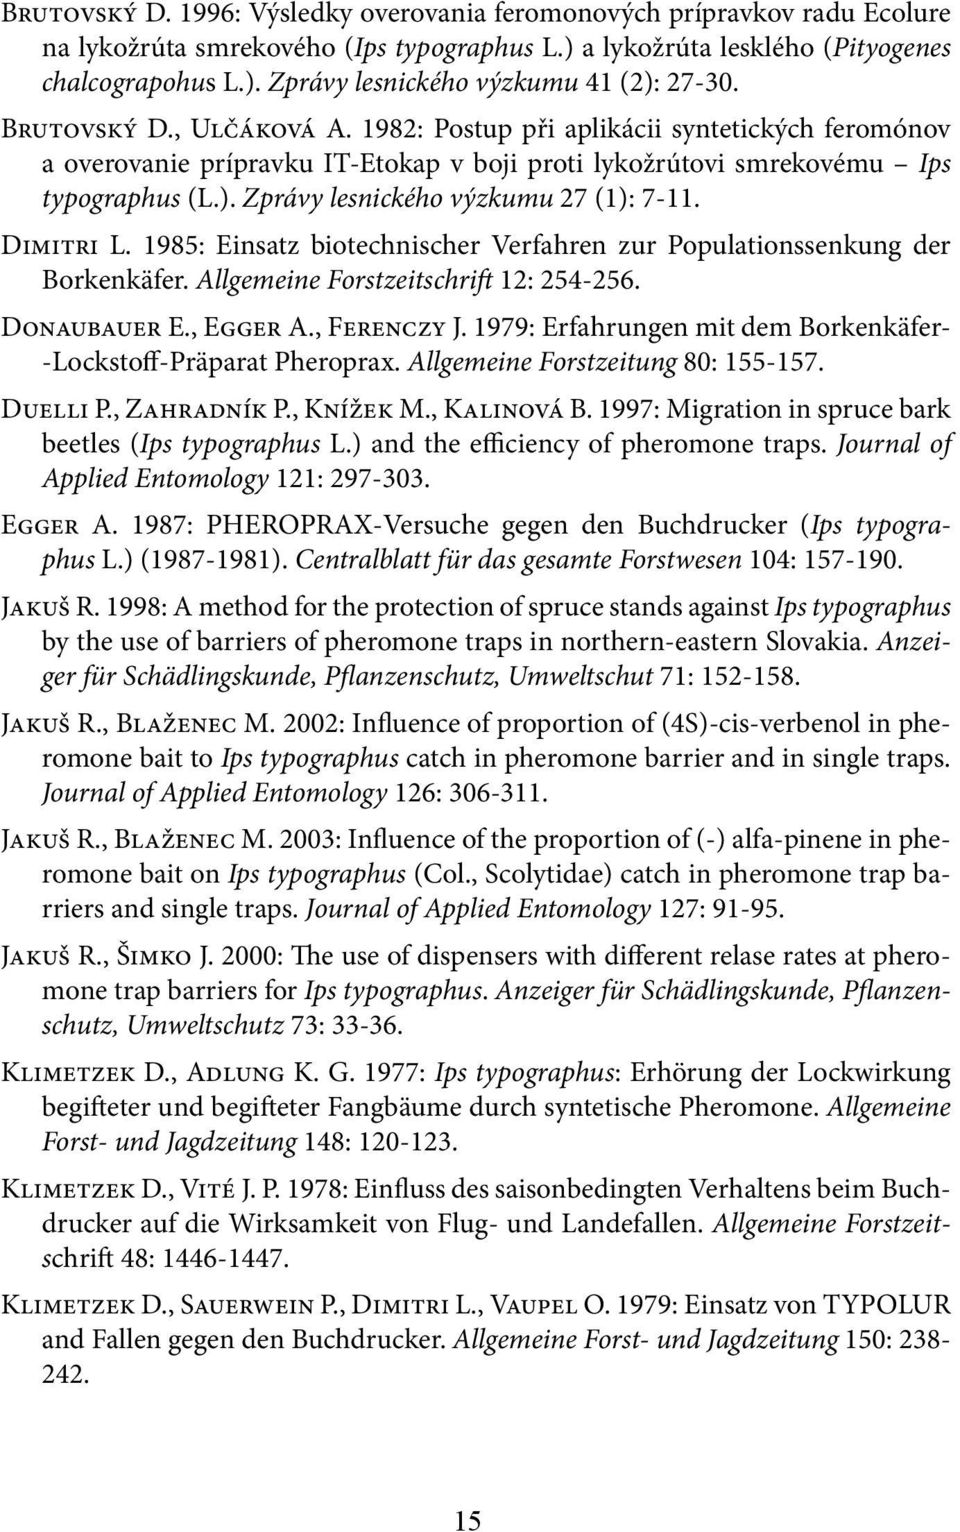 Zprávy lesnického výzkumu 27 (1): 7-11. Dimitri L. 1985: Einsatz biotechnischer Verfahren zur Populationssenkung der Borkenkäfer. Allgemeine Forstzeitschrift 12: 254-256. Donaubauer E., Egger A.